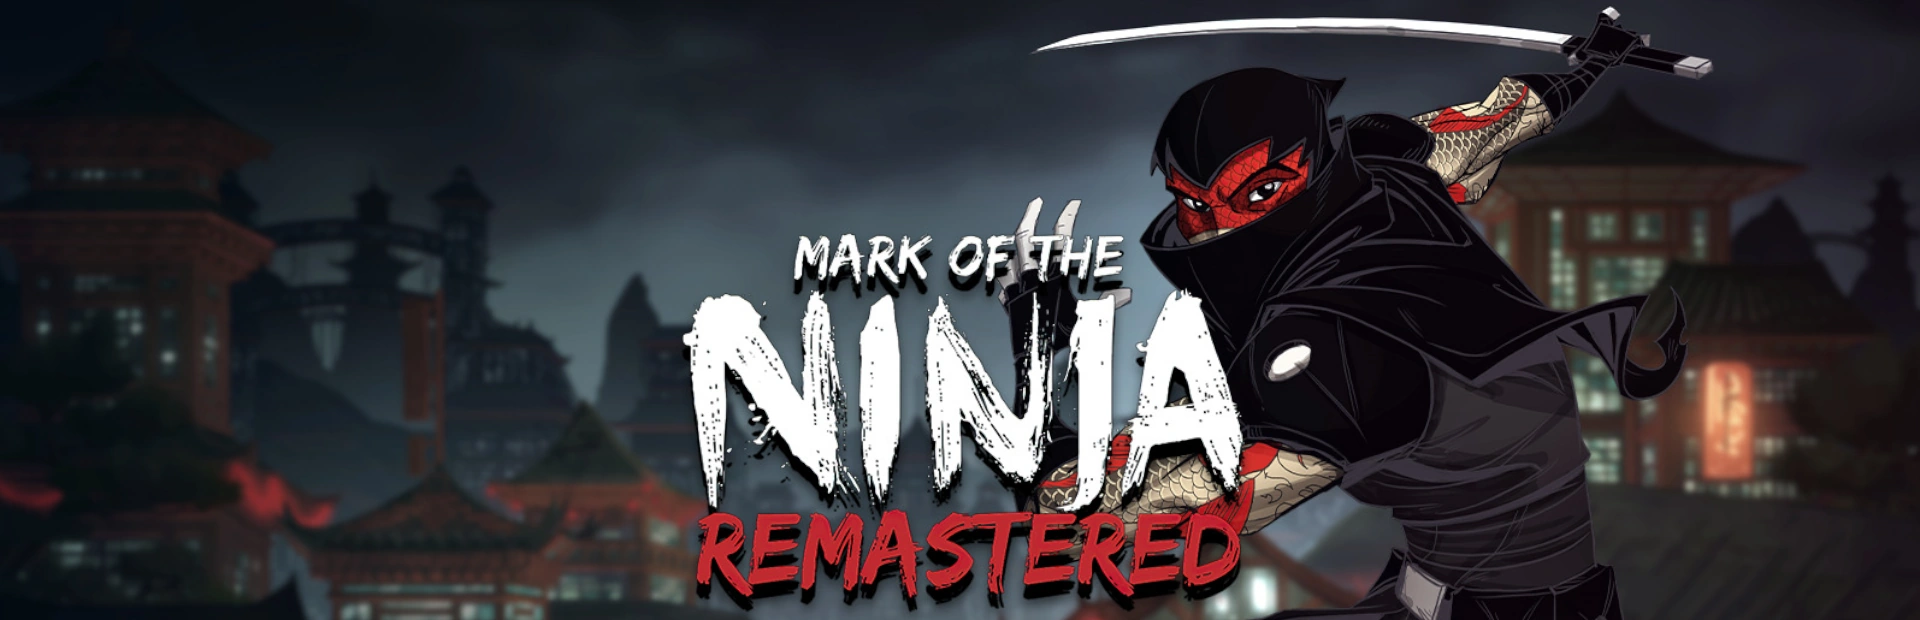 دانلود بازی Mark of the Ninja: Remastered برای PC | گیمباتو